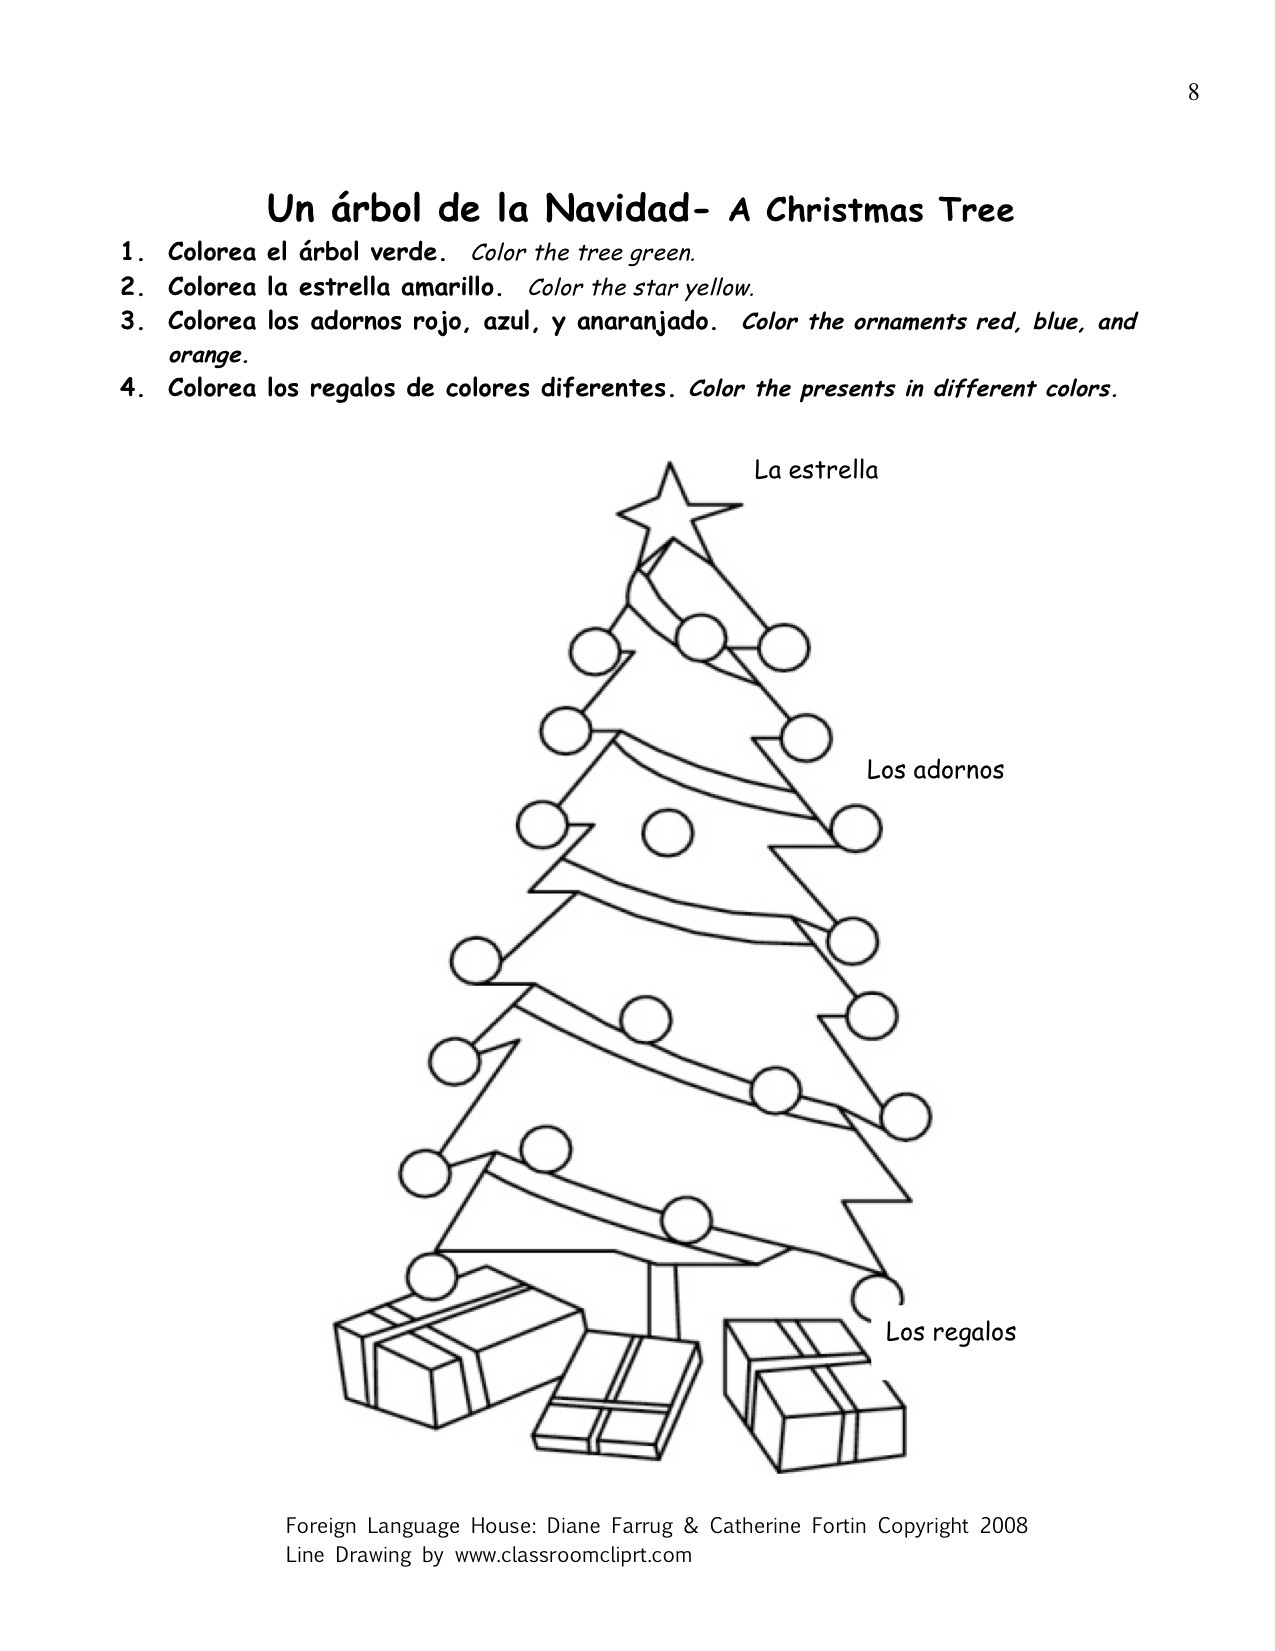 free-printable-spanish-christmas-worksheets-printable-templates